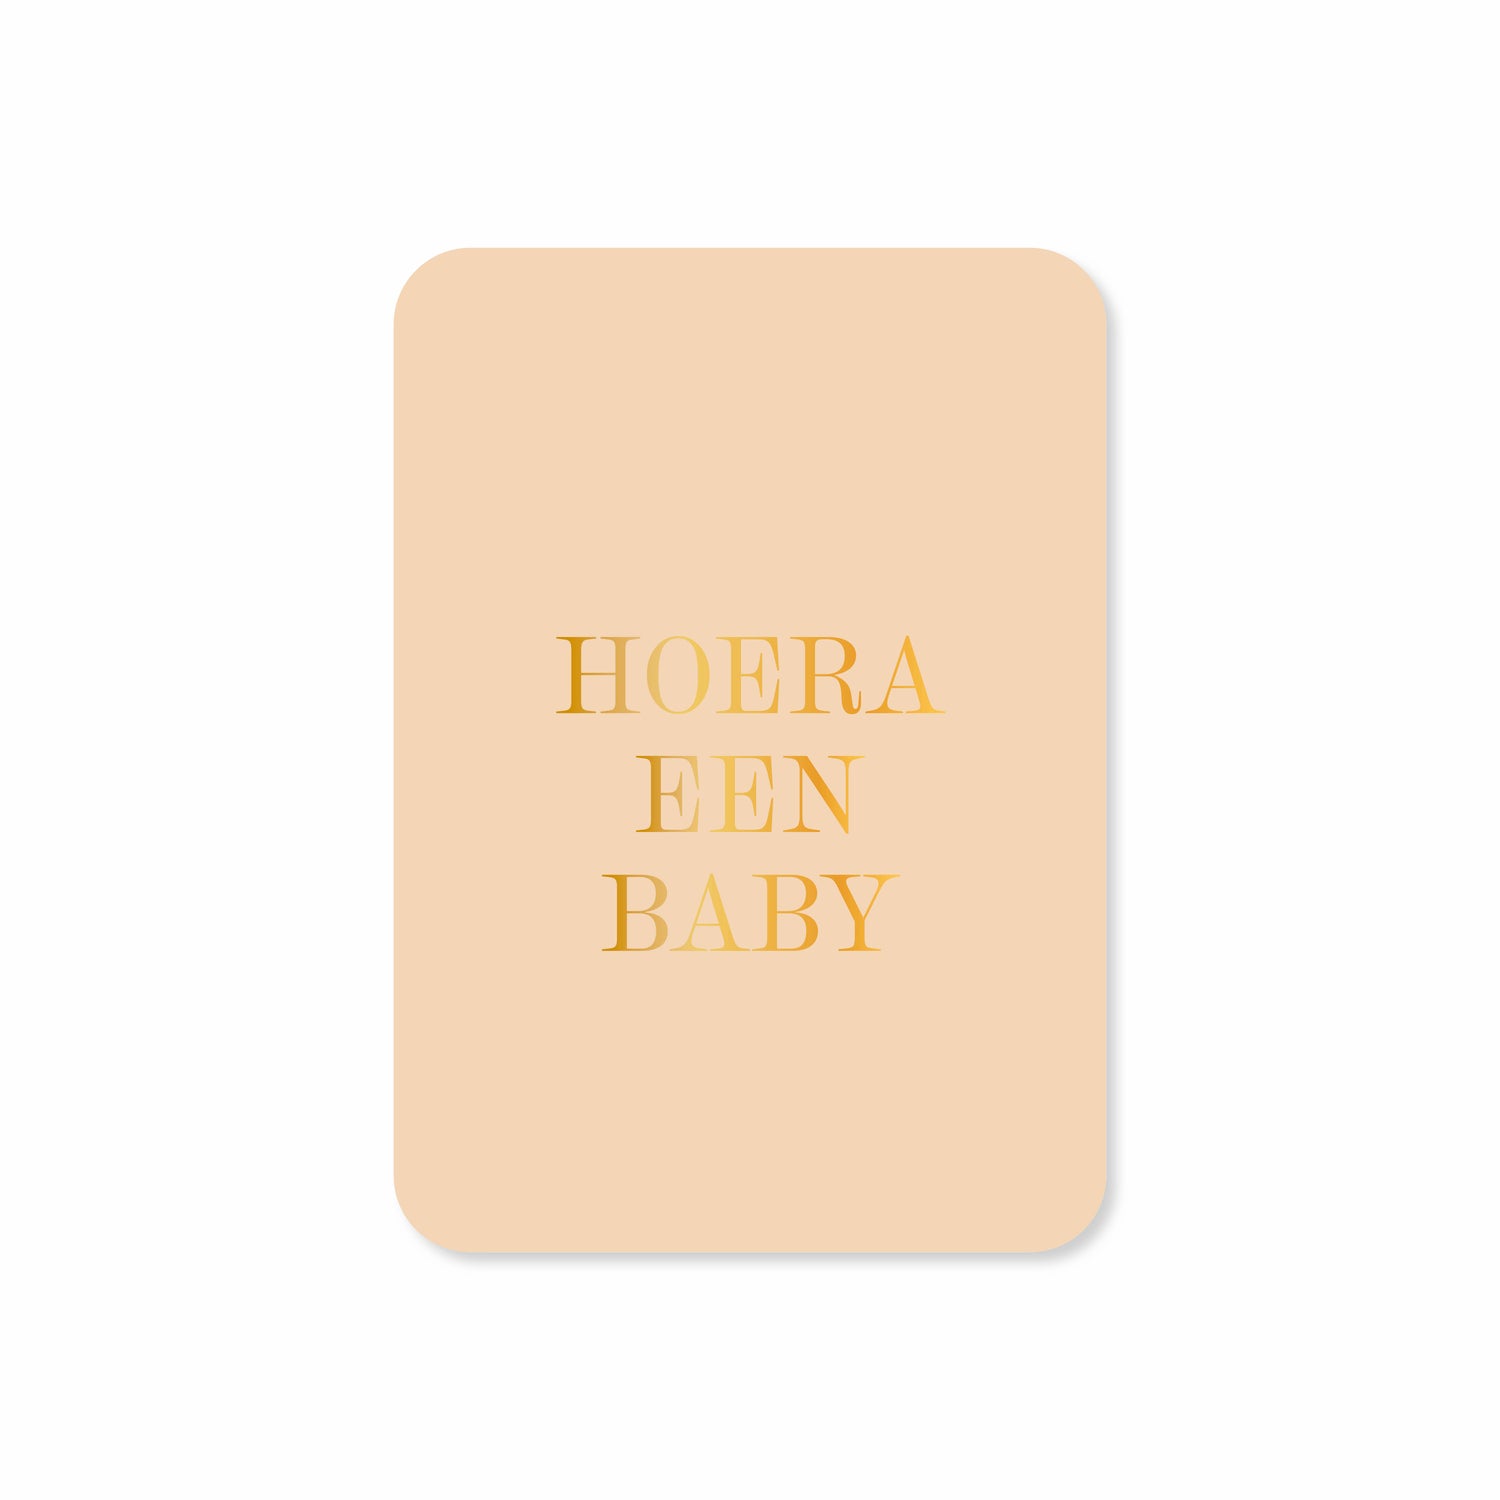 Minikaart Hoera een baby (met goudfolie)